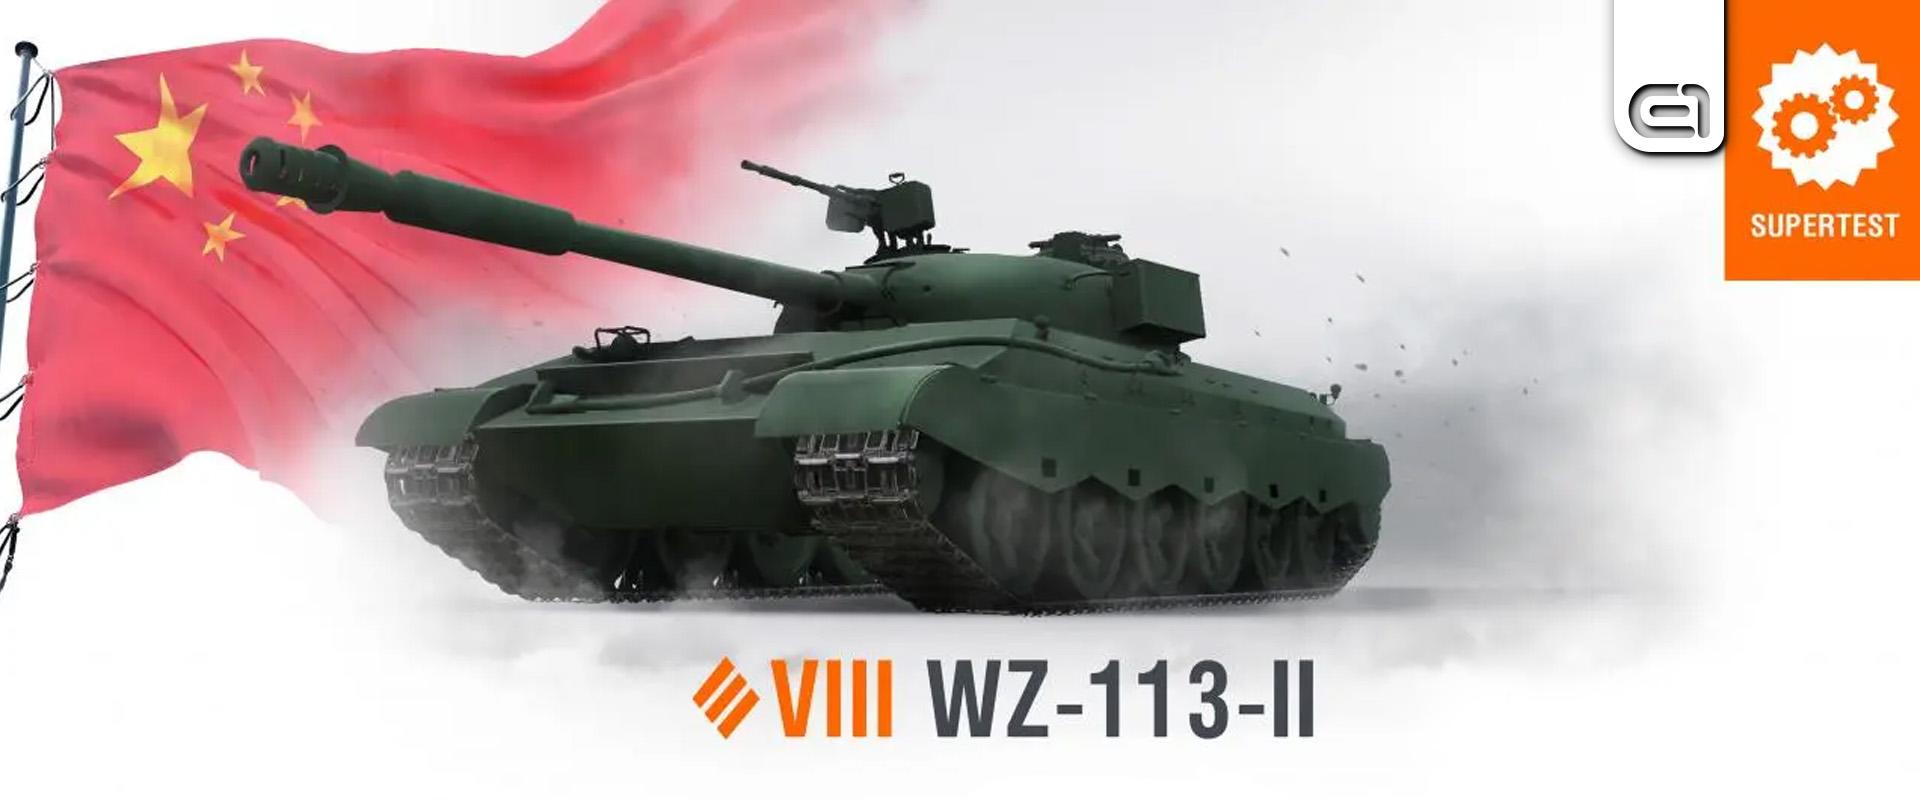 2023-ban érkező prémium tankok: WZ-113-II bemutató